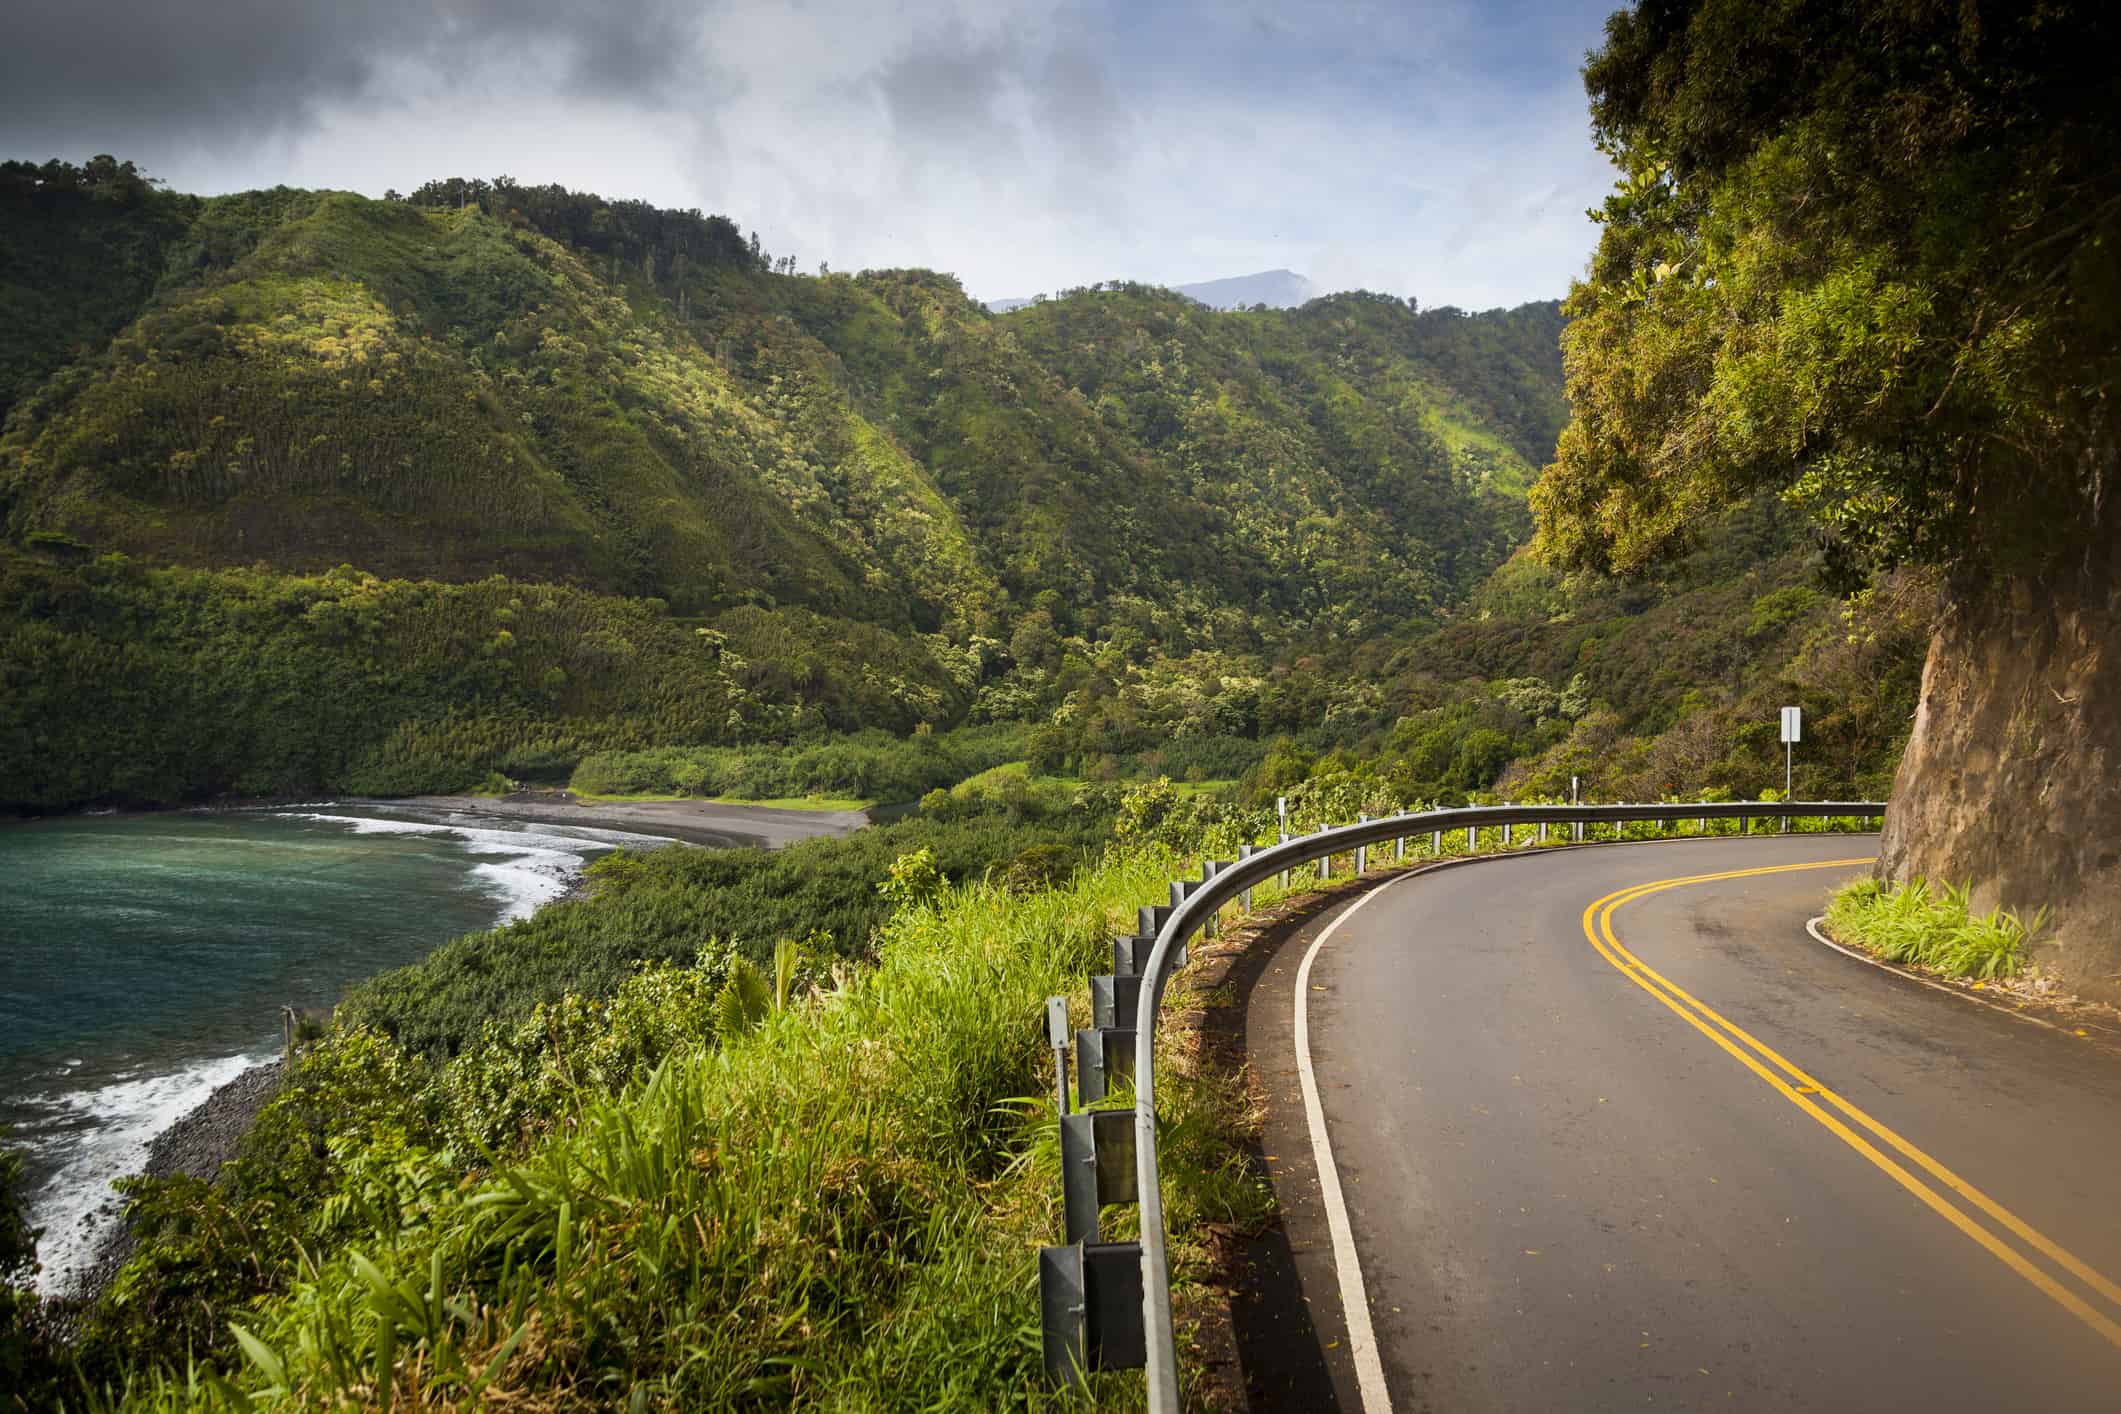 Scenic Hana Highway on the east coast of Maui, Hawaii, USA